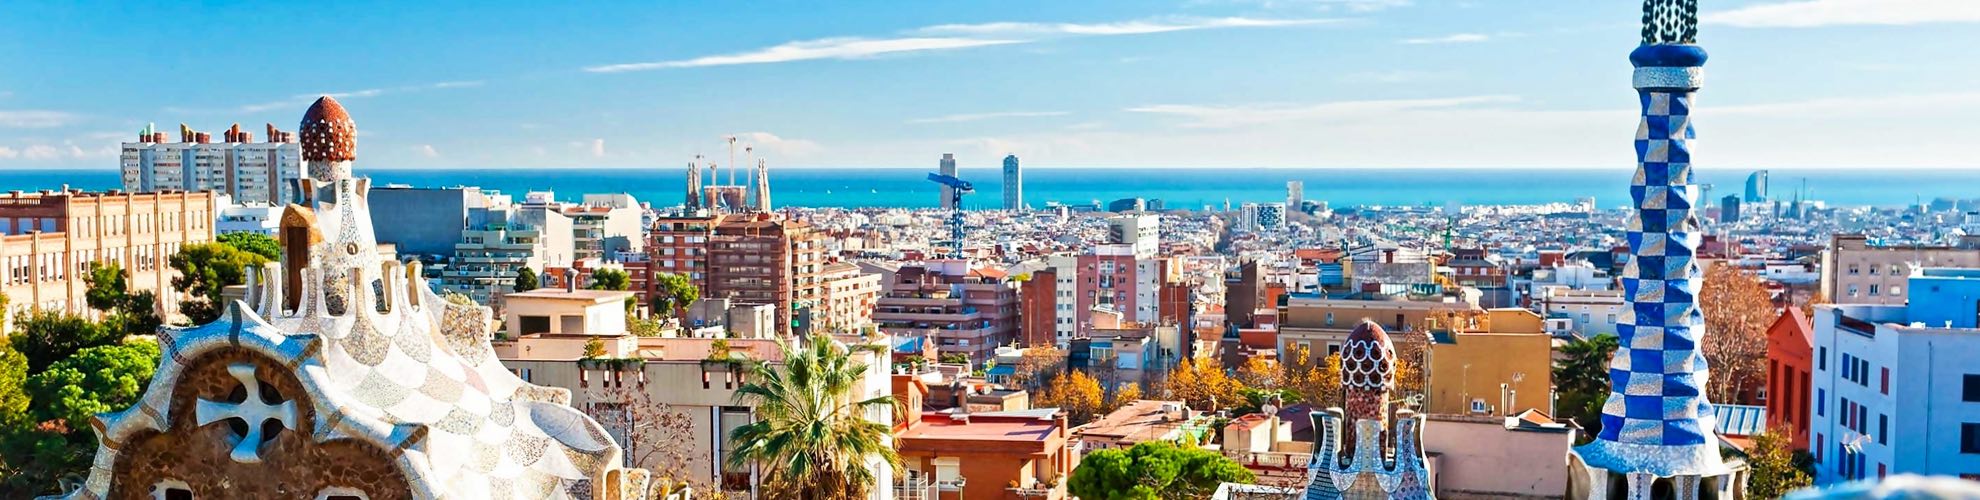 أفضل وسائل المواصلات في مدينة برشلونة